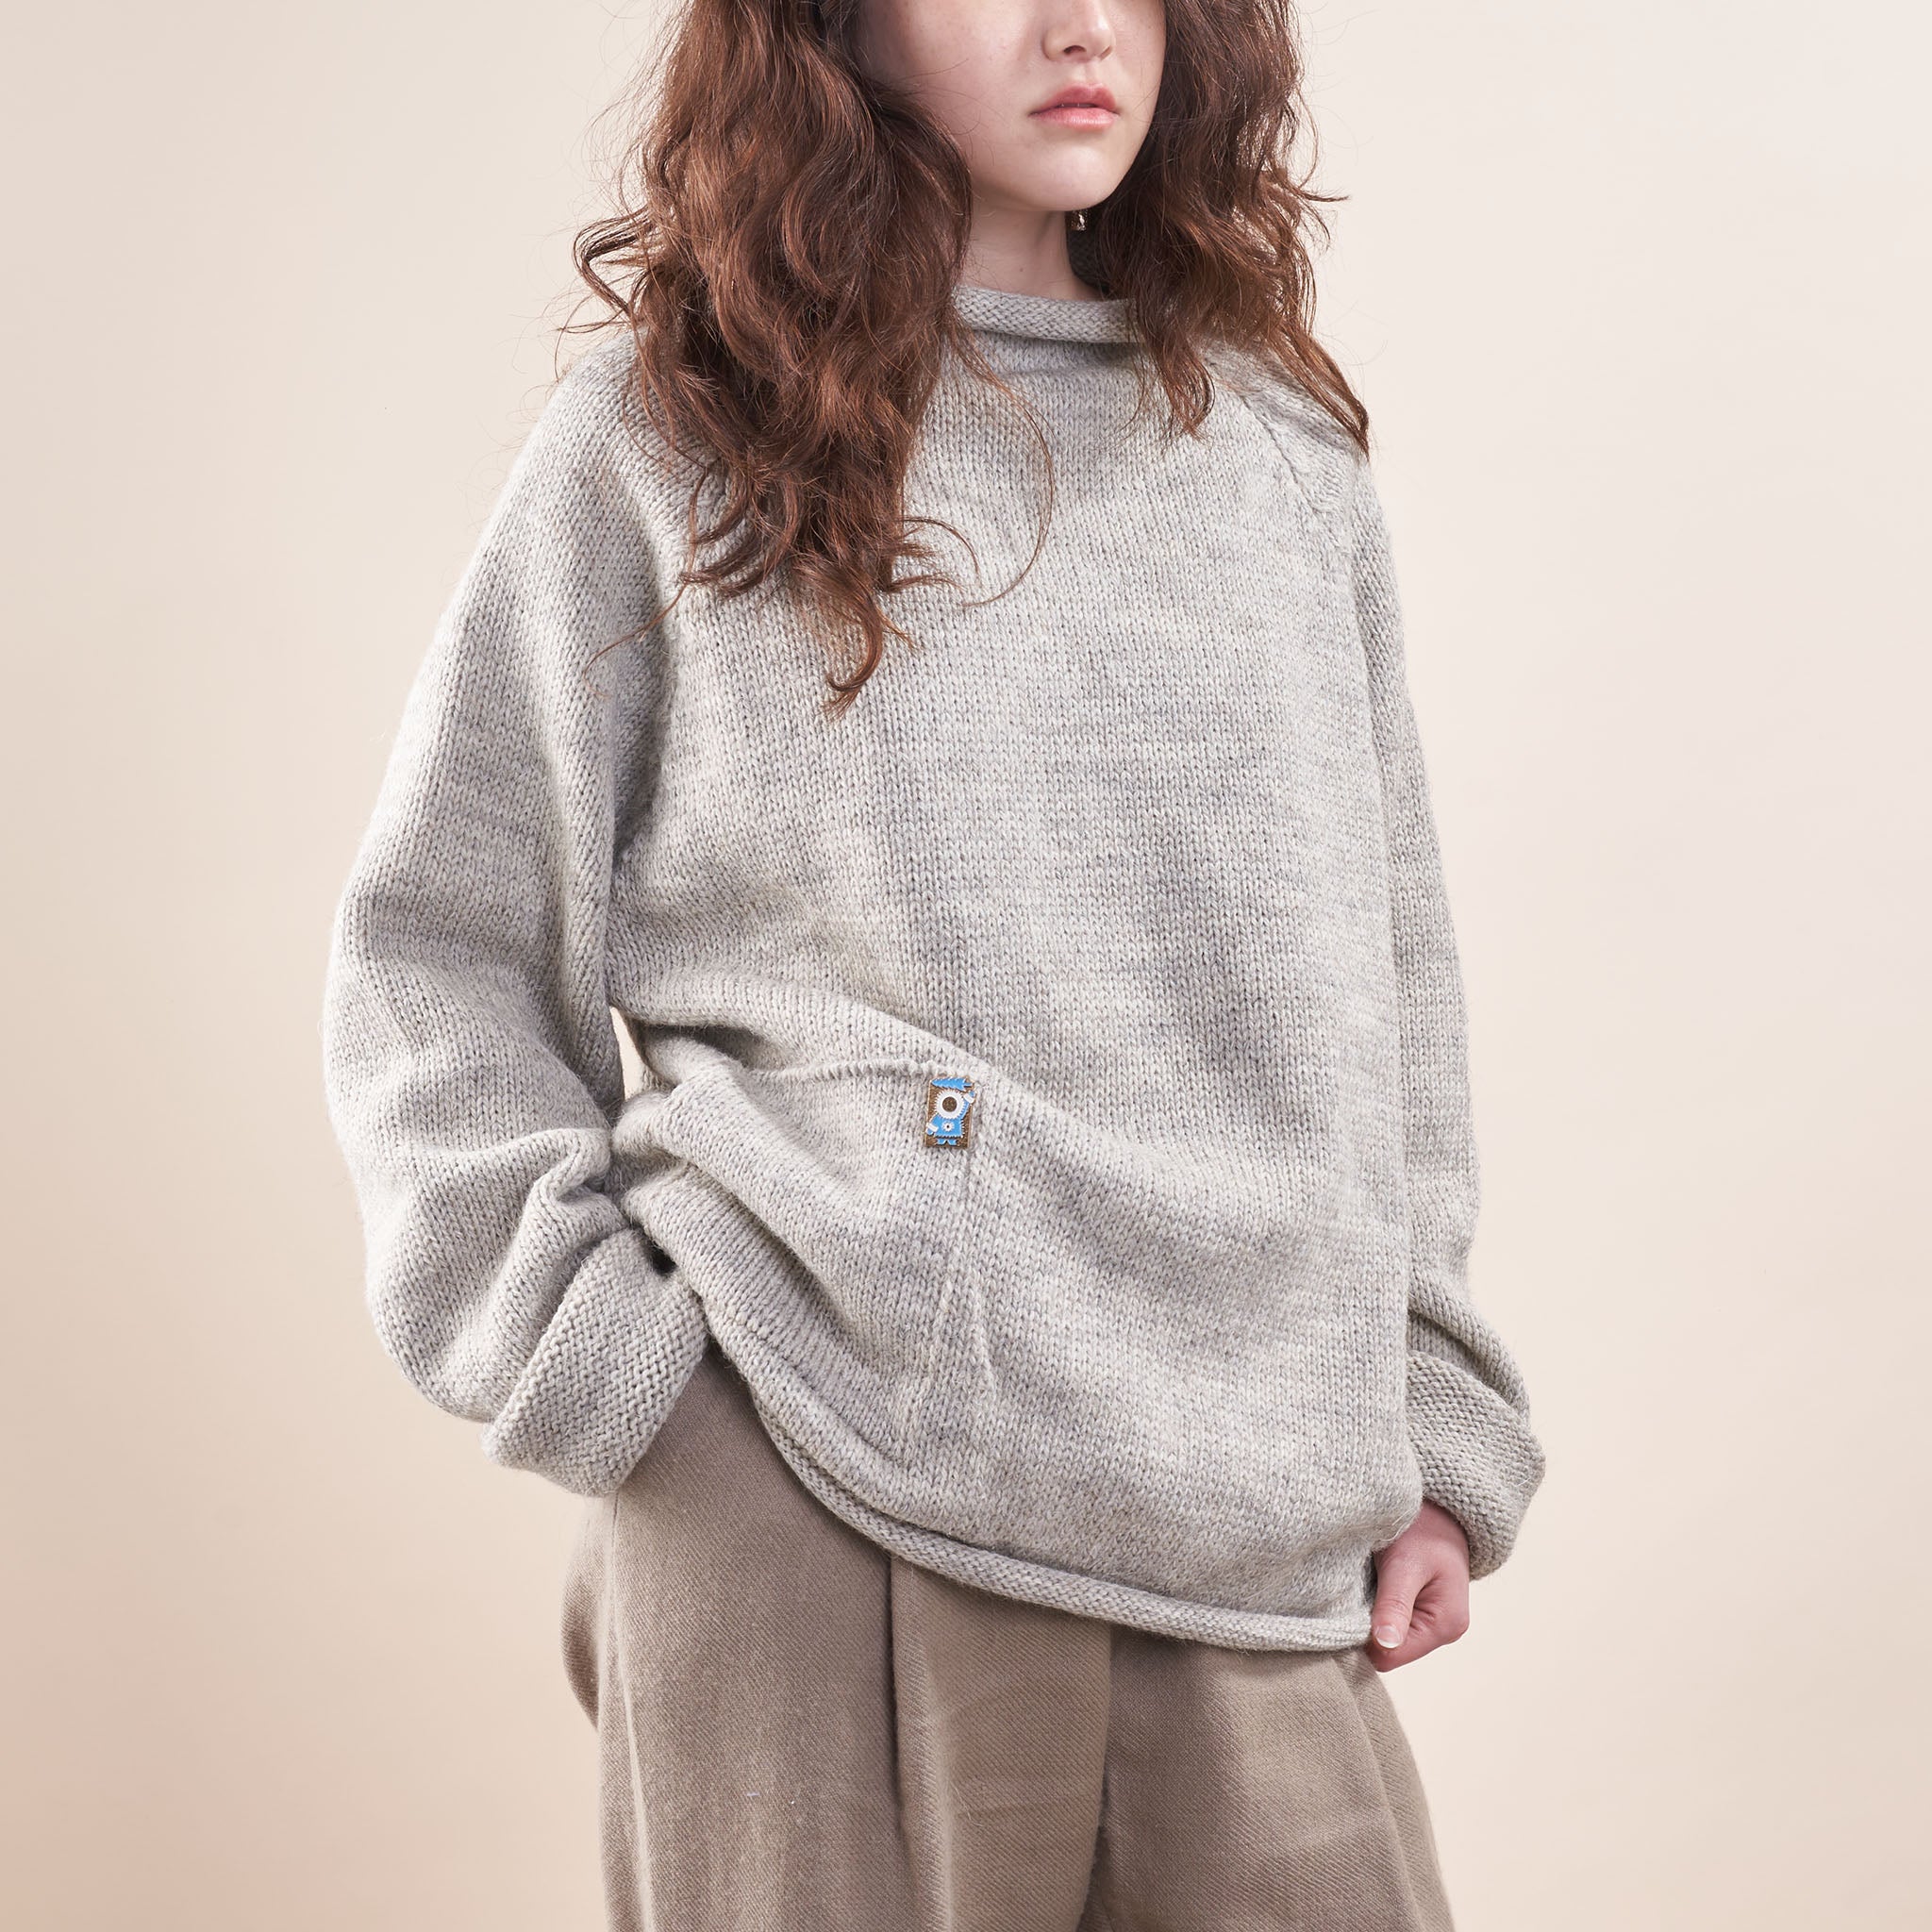 Xenia Telunts | Handknit Fisherman Sweater in Undyed Oatmeal Wool 